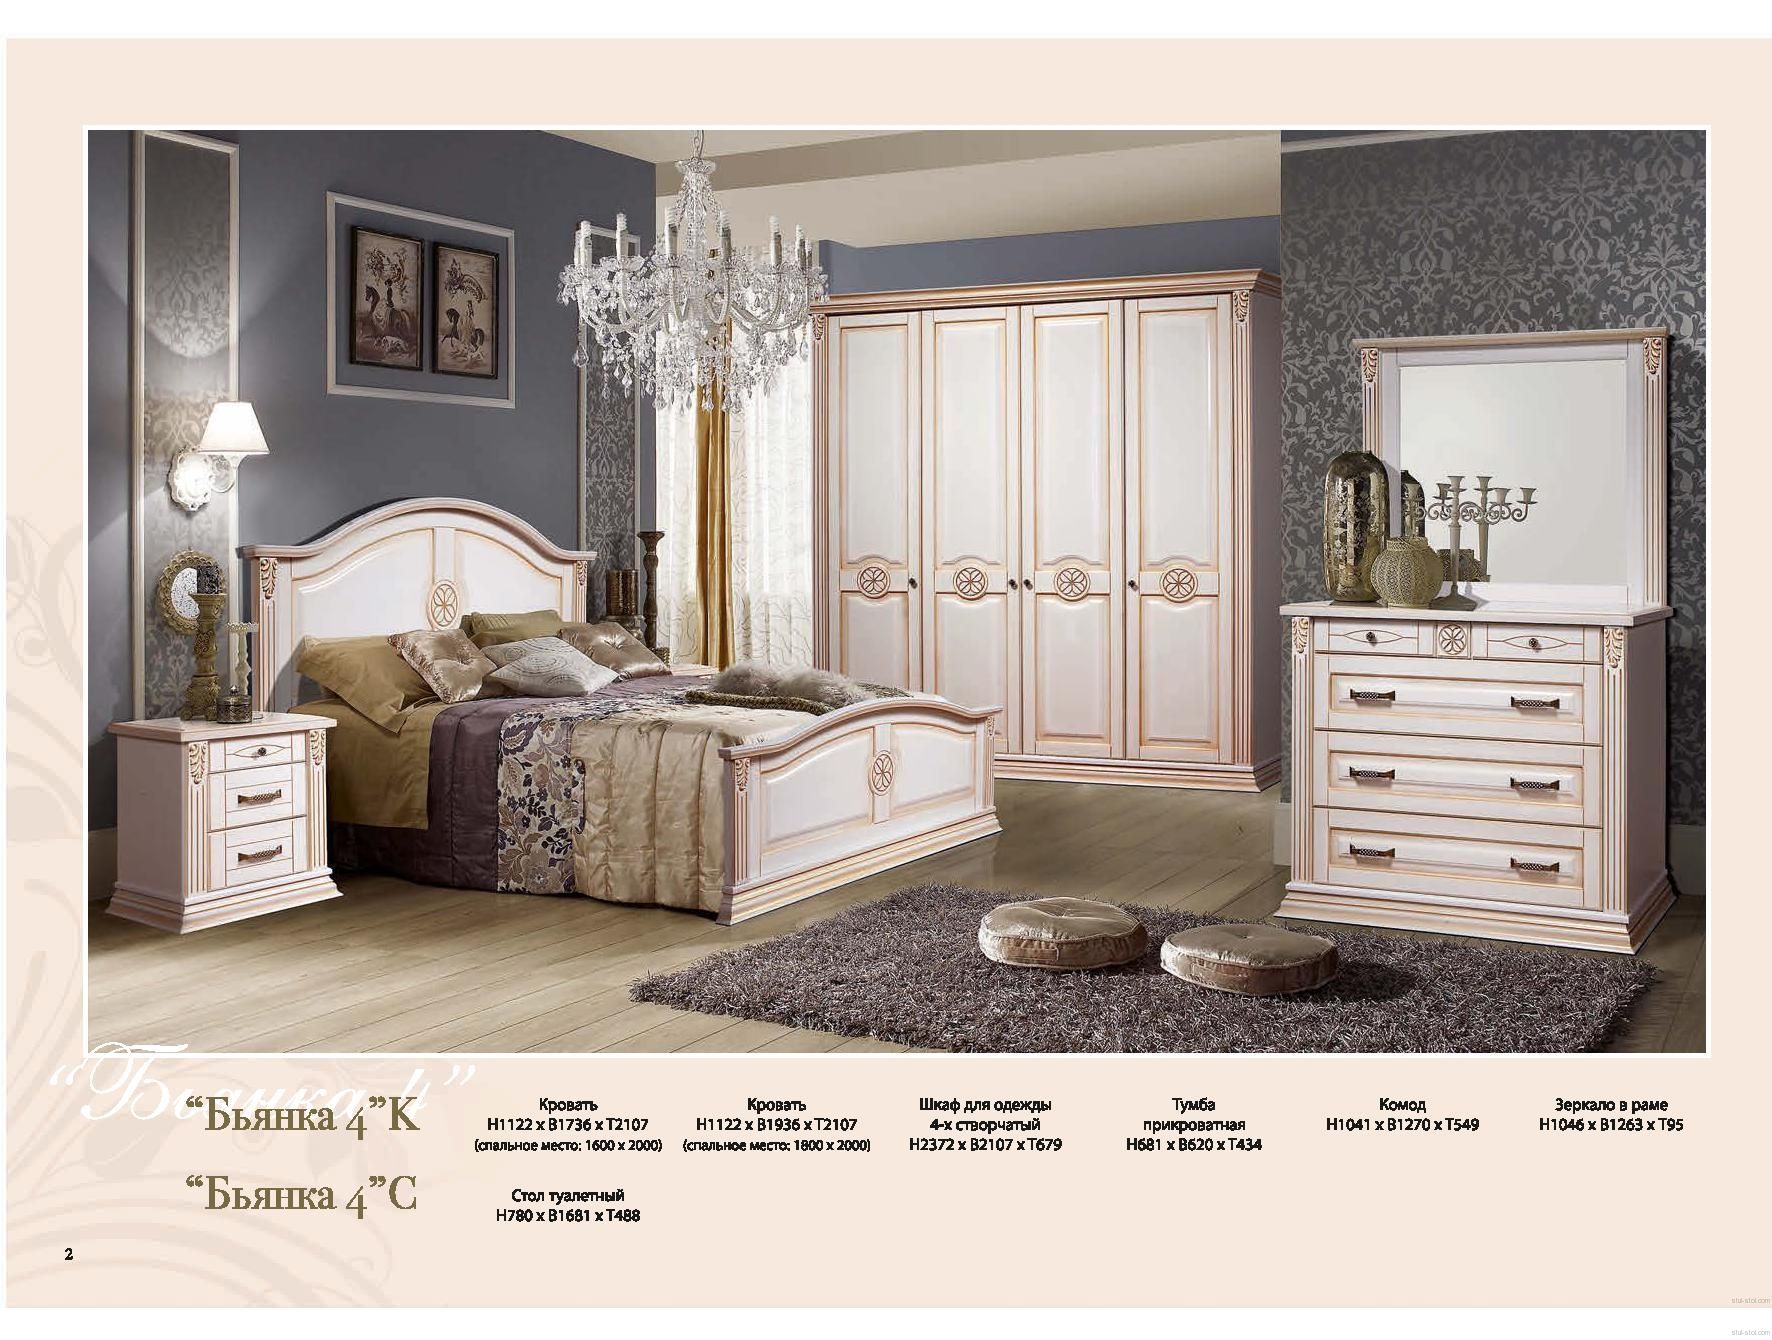 Белорусская мебель спальня. Спальный гарнитур Бьянка. Мебель Бьянка спальня. Бьянка спальный гарнитур мебель.